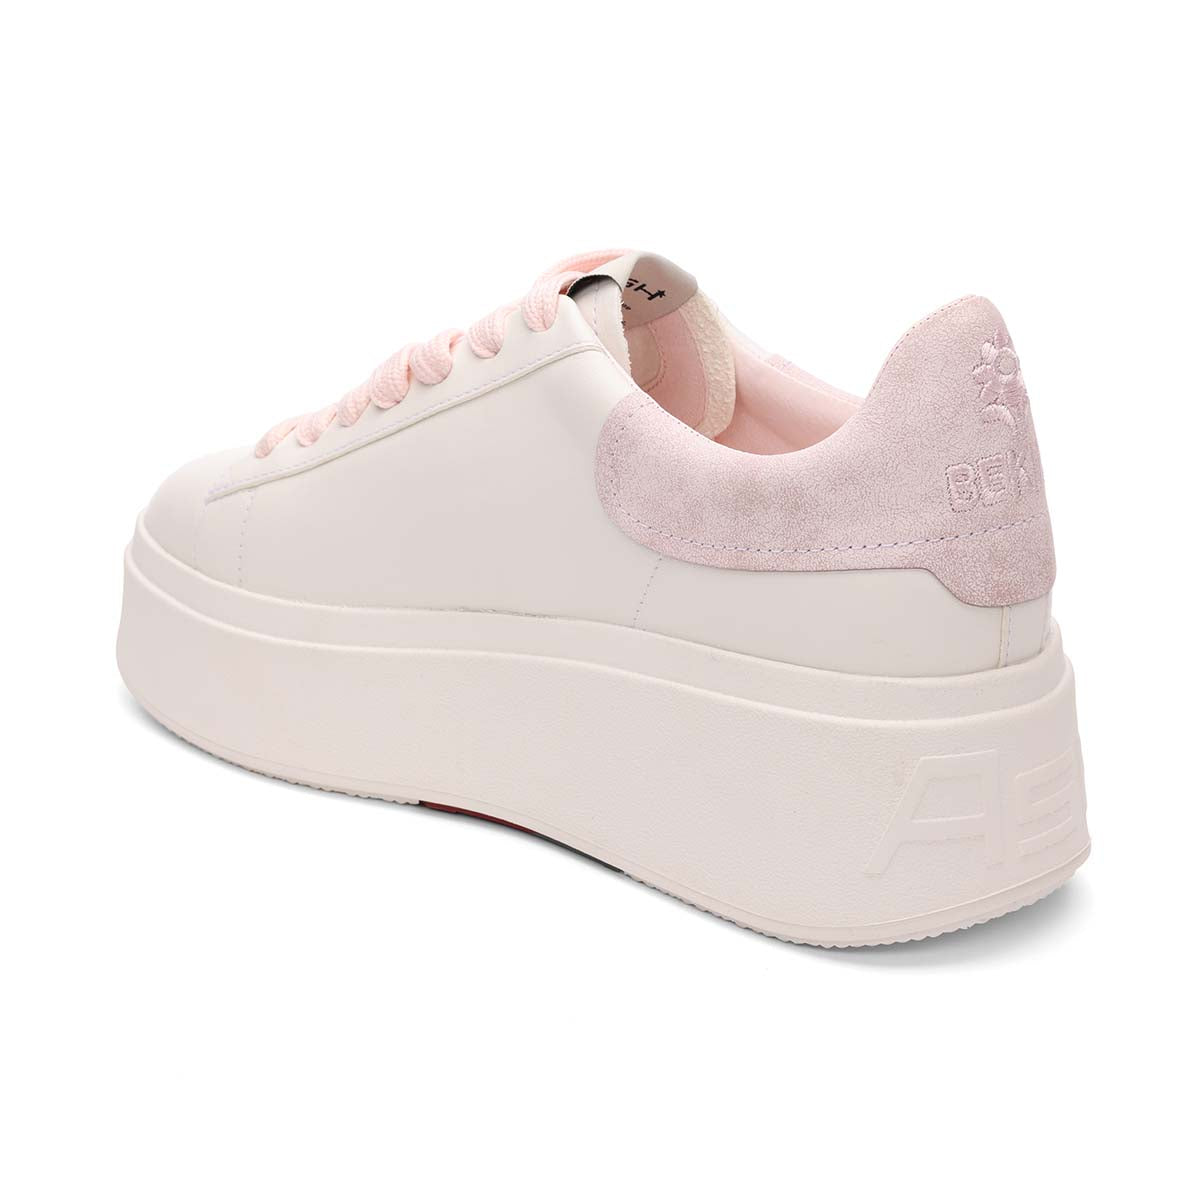 Moby Be Kind Pink Platform Sneaker